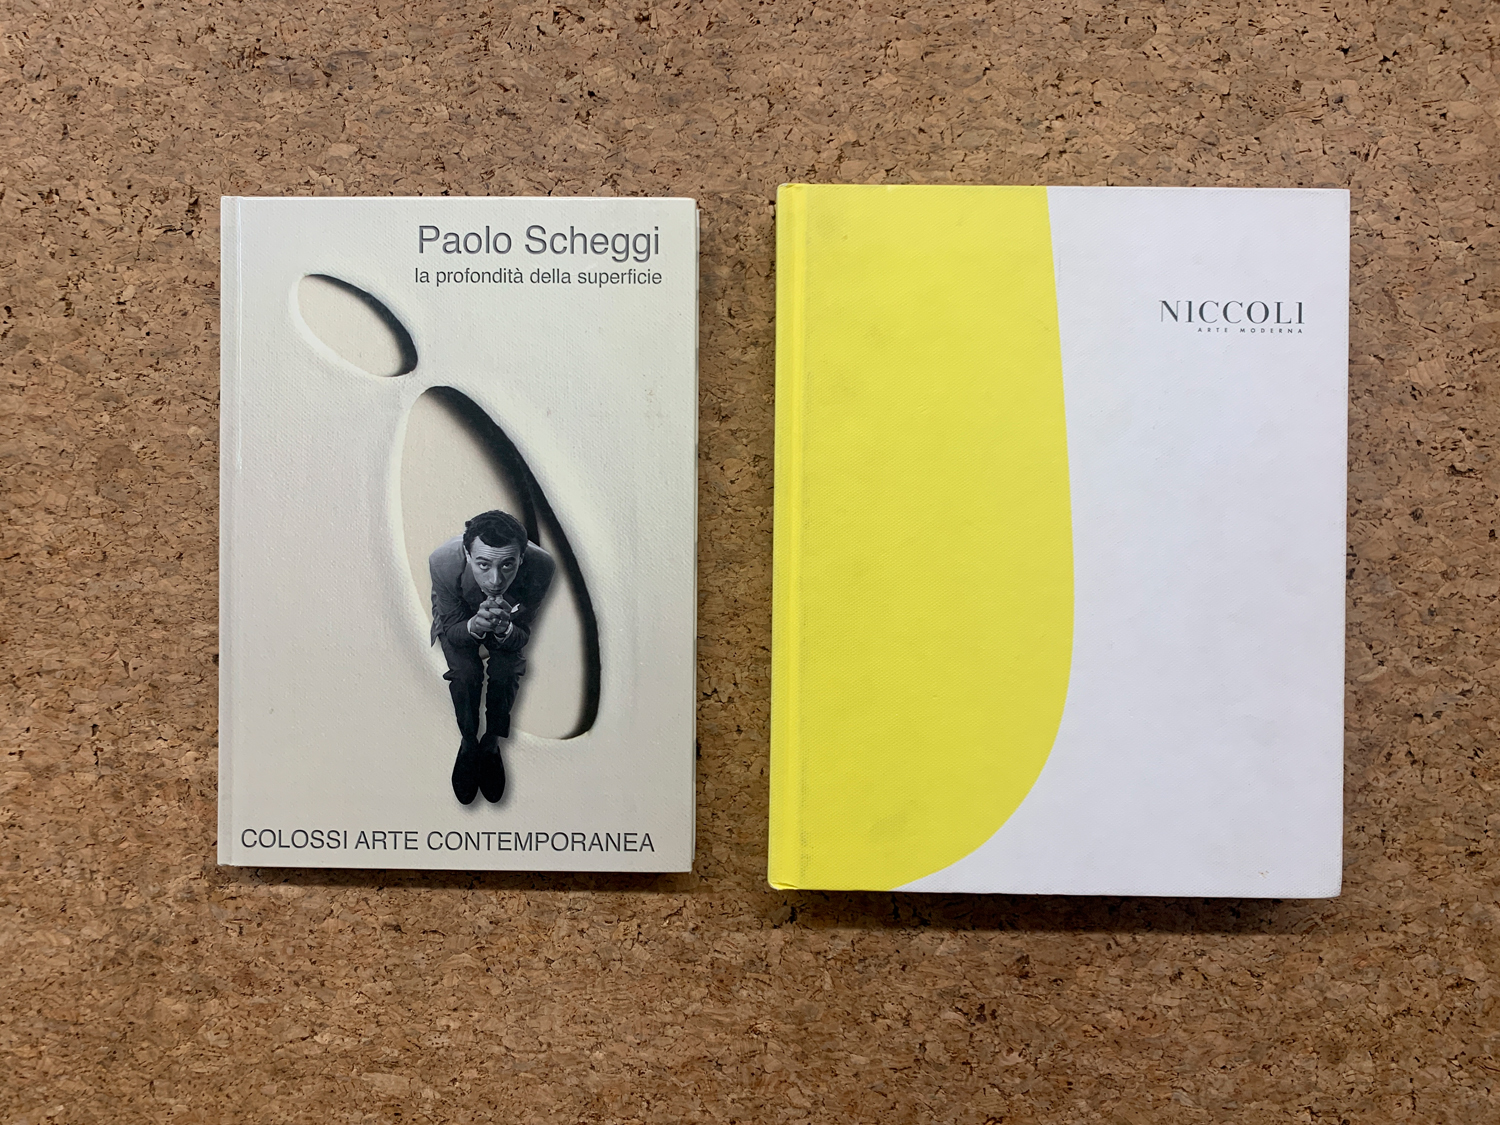 PAOLO SCHEGGI E GALLERIA NICCOLI - Lotto unico di 2 cataloghi